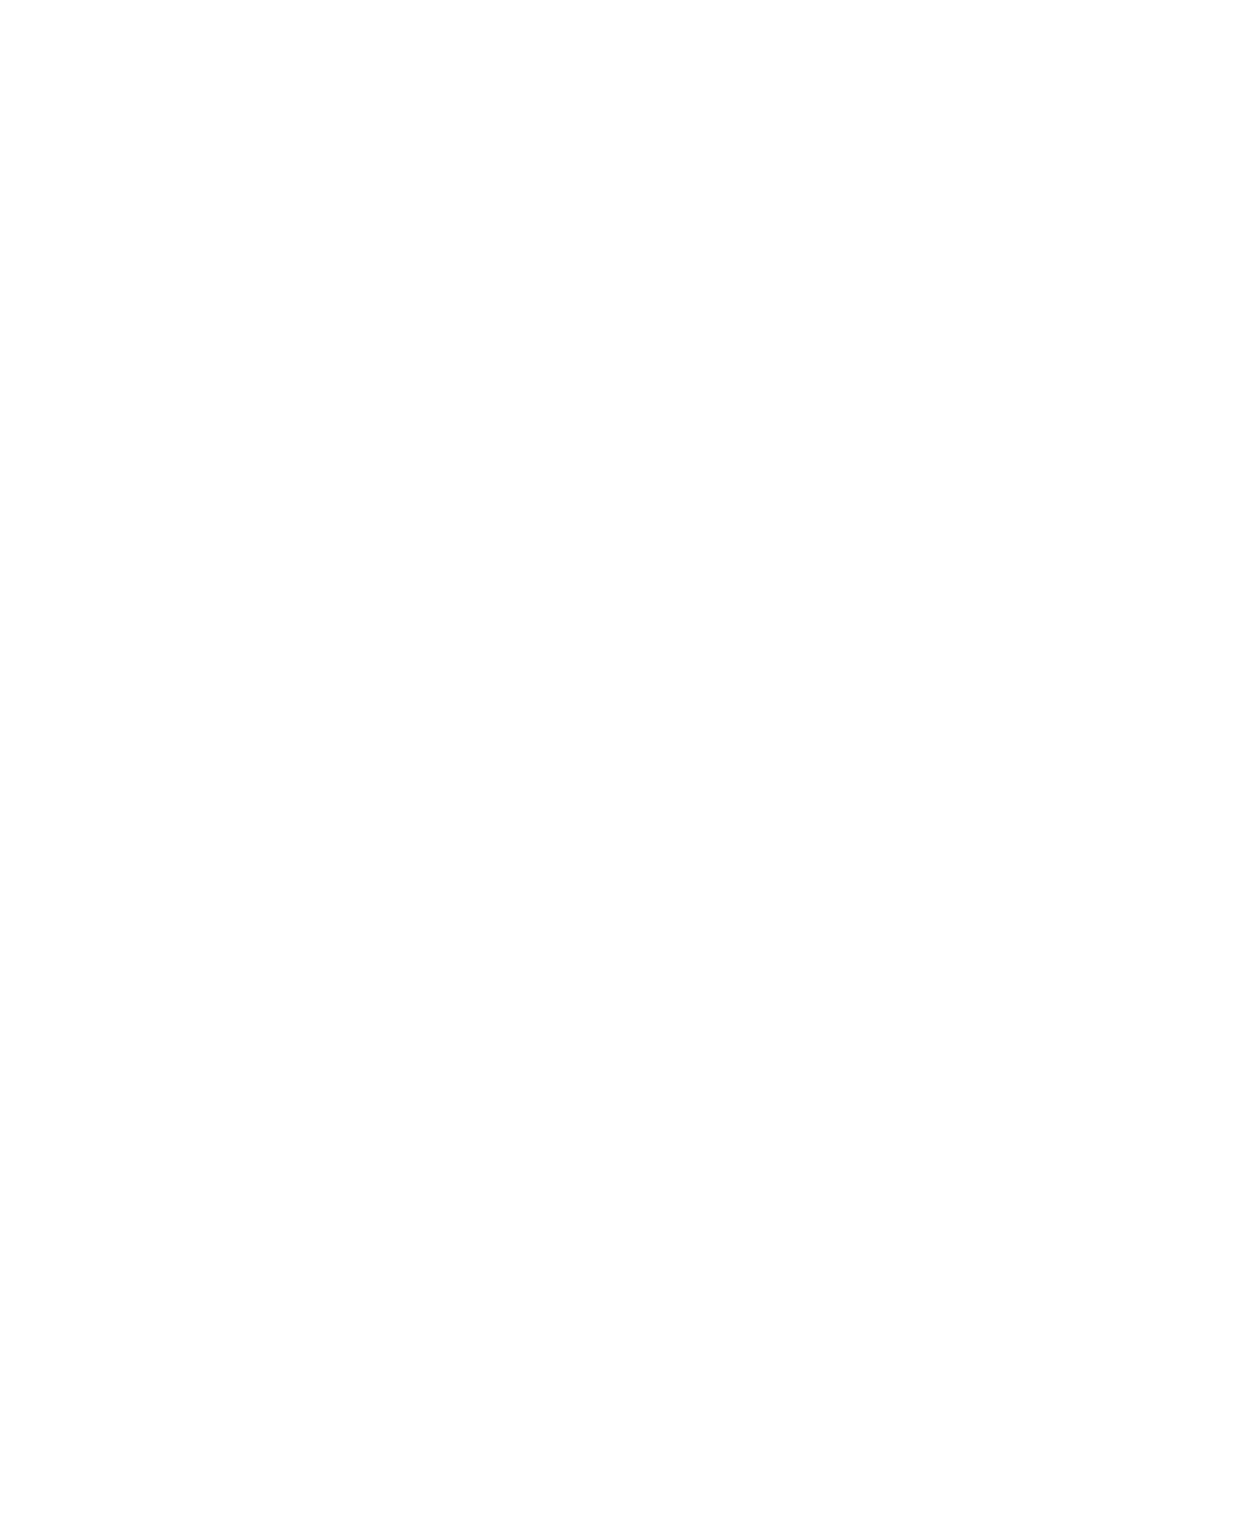 Cytek Biosciences logo for dark backgrounds (transparent PNG)